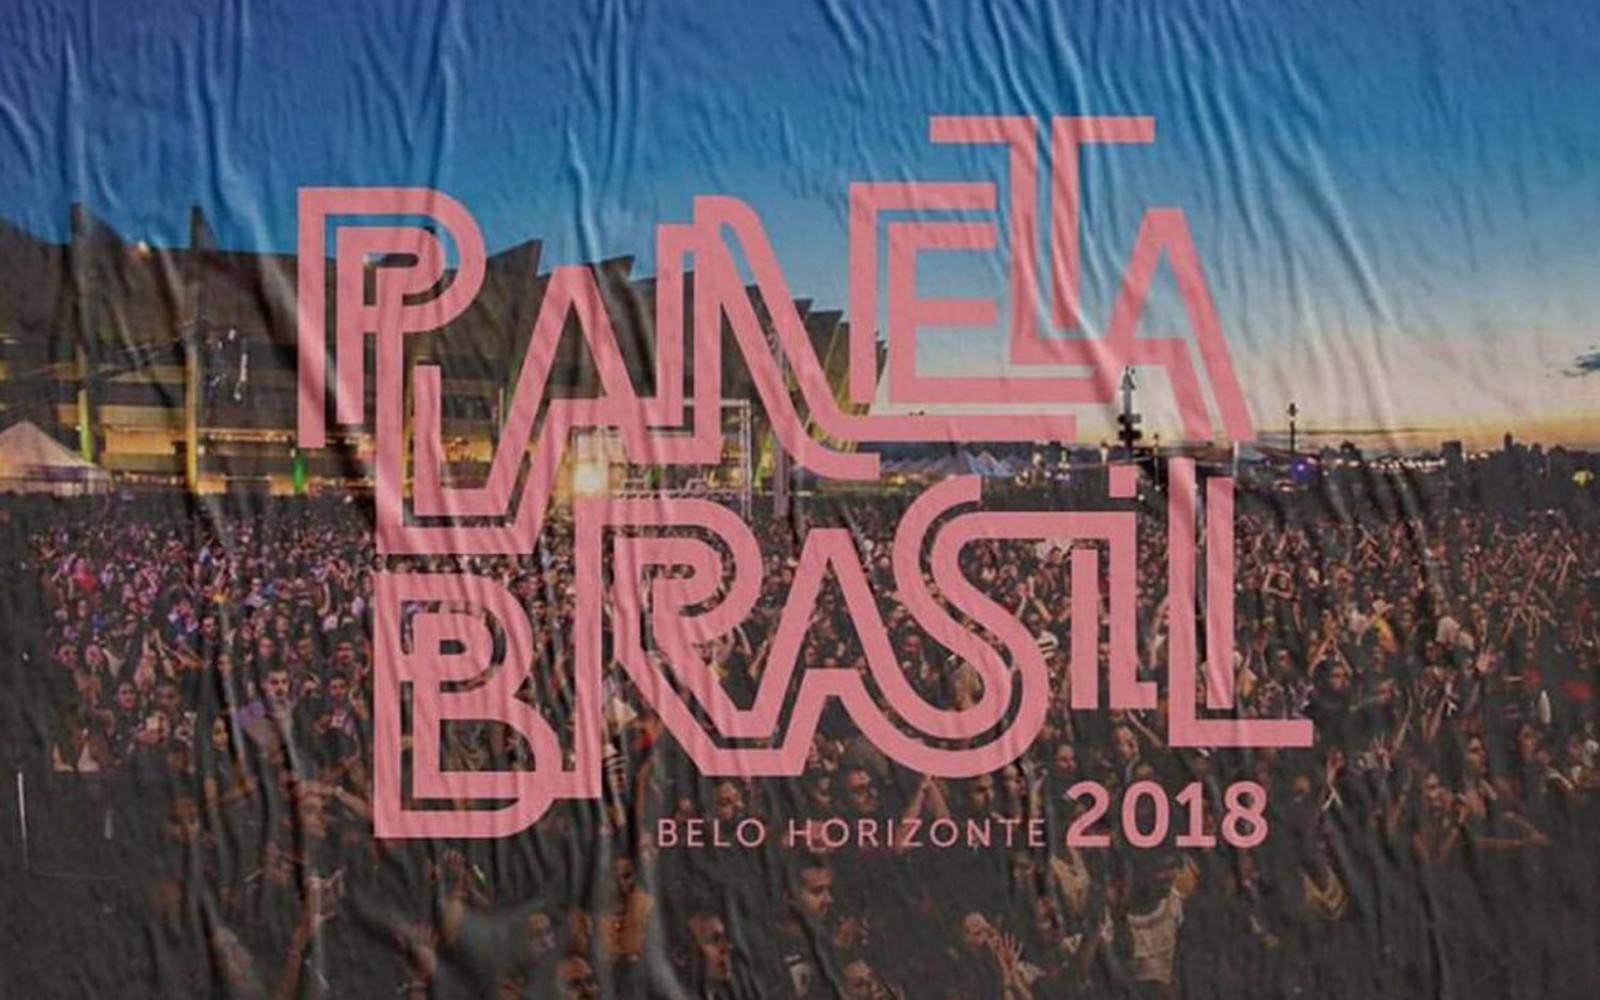 Festival Planeta Brasil 2018 acontece em Belo Horizonte nesse fim de semana